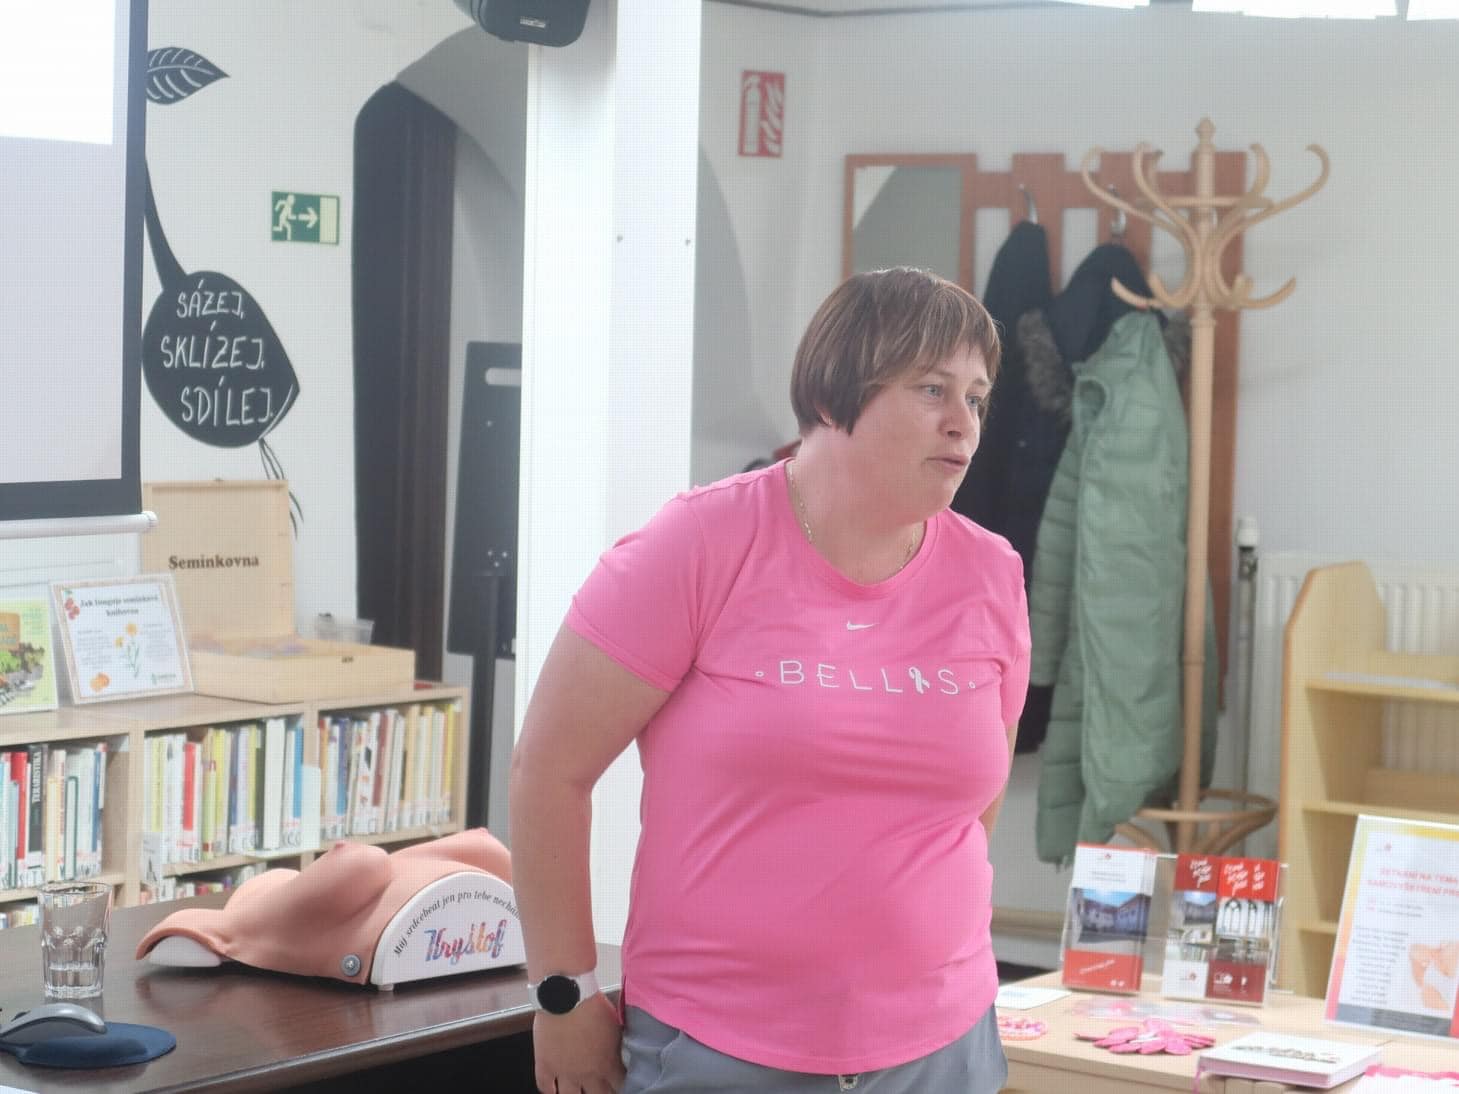 Workshop samovyšetření prsu v Městské knihovně v Českém Krumlově